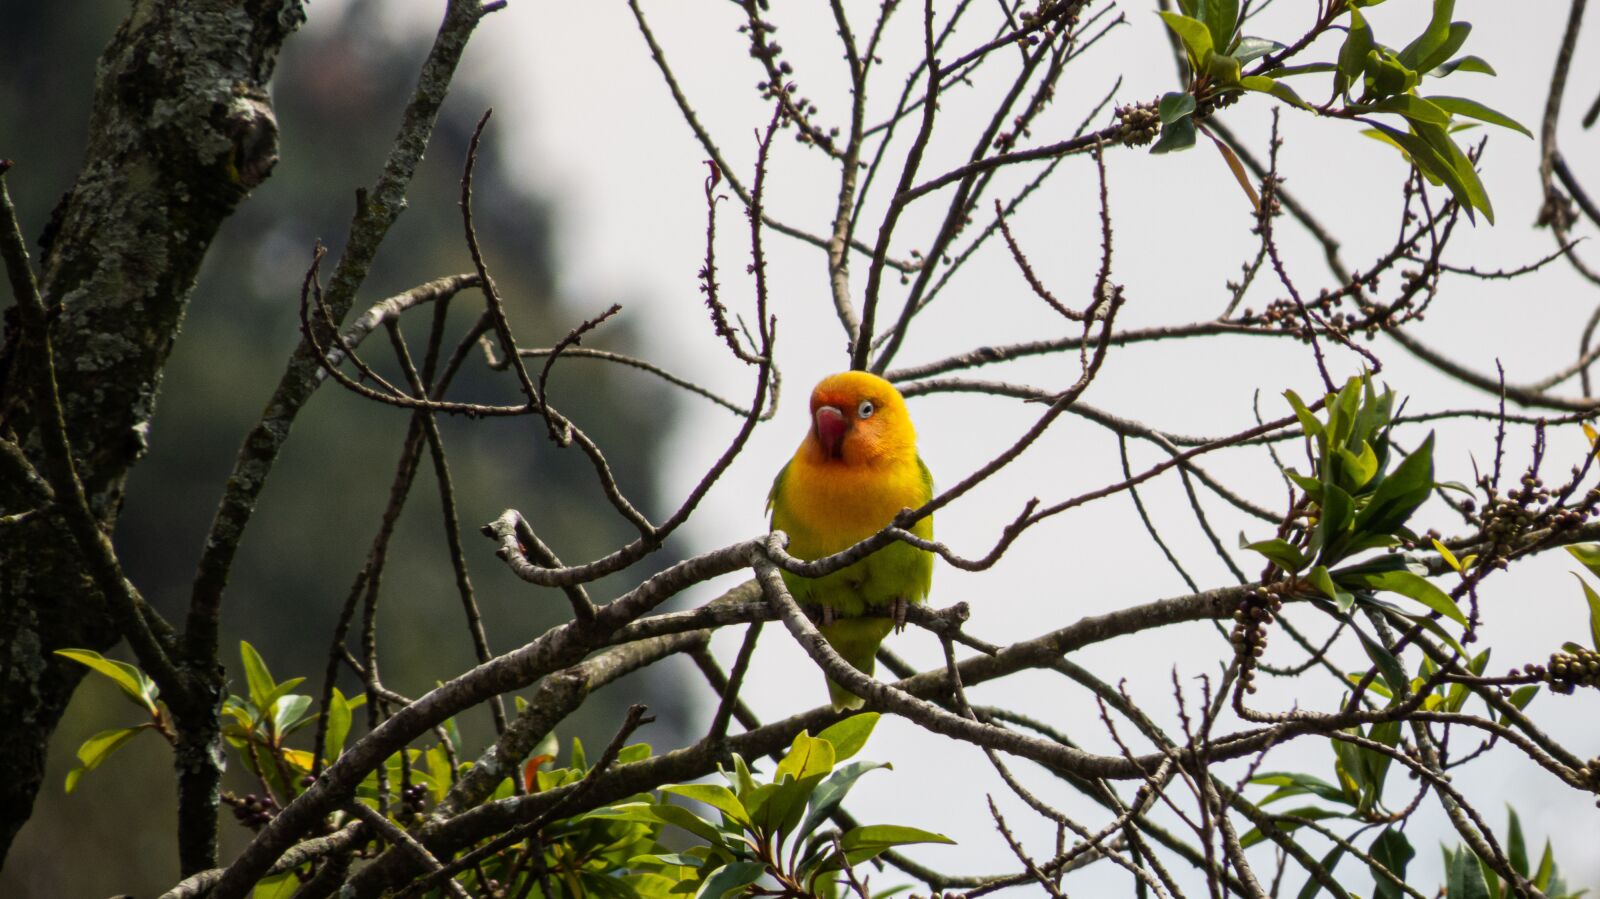 Canon PowerShot SX50 HS sample photo. Bird, parakeet, plumage photography